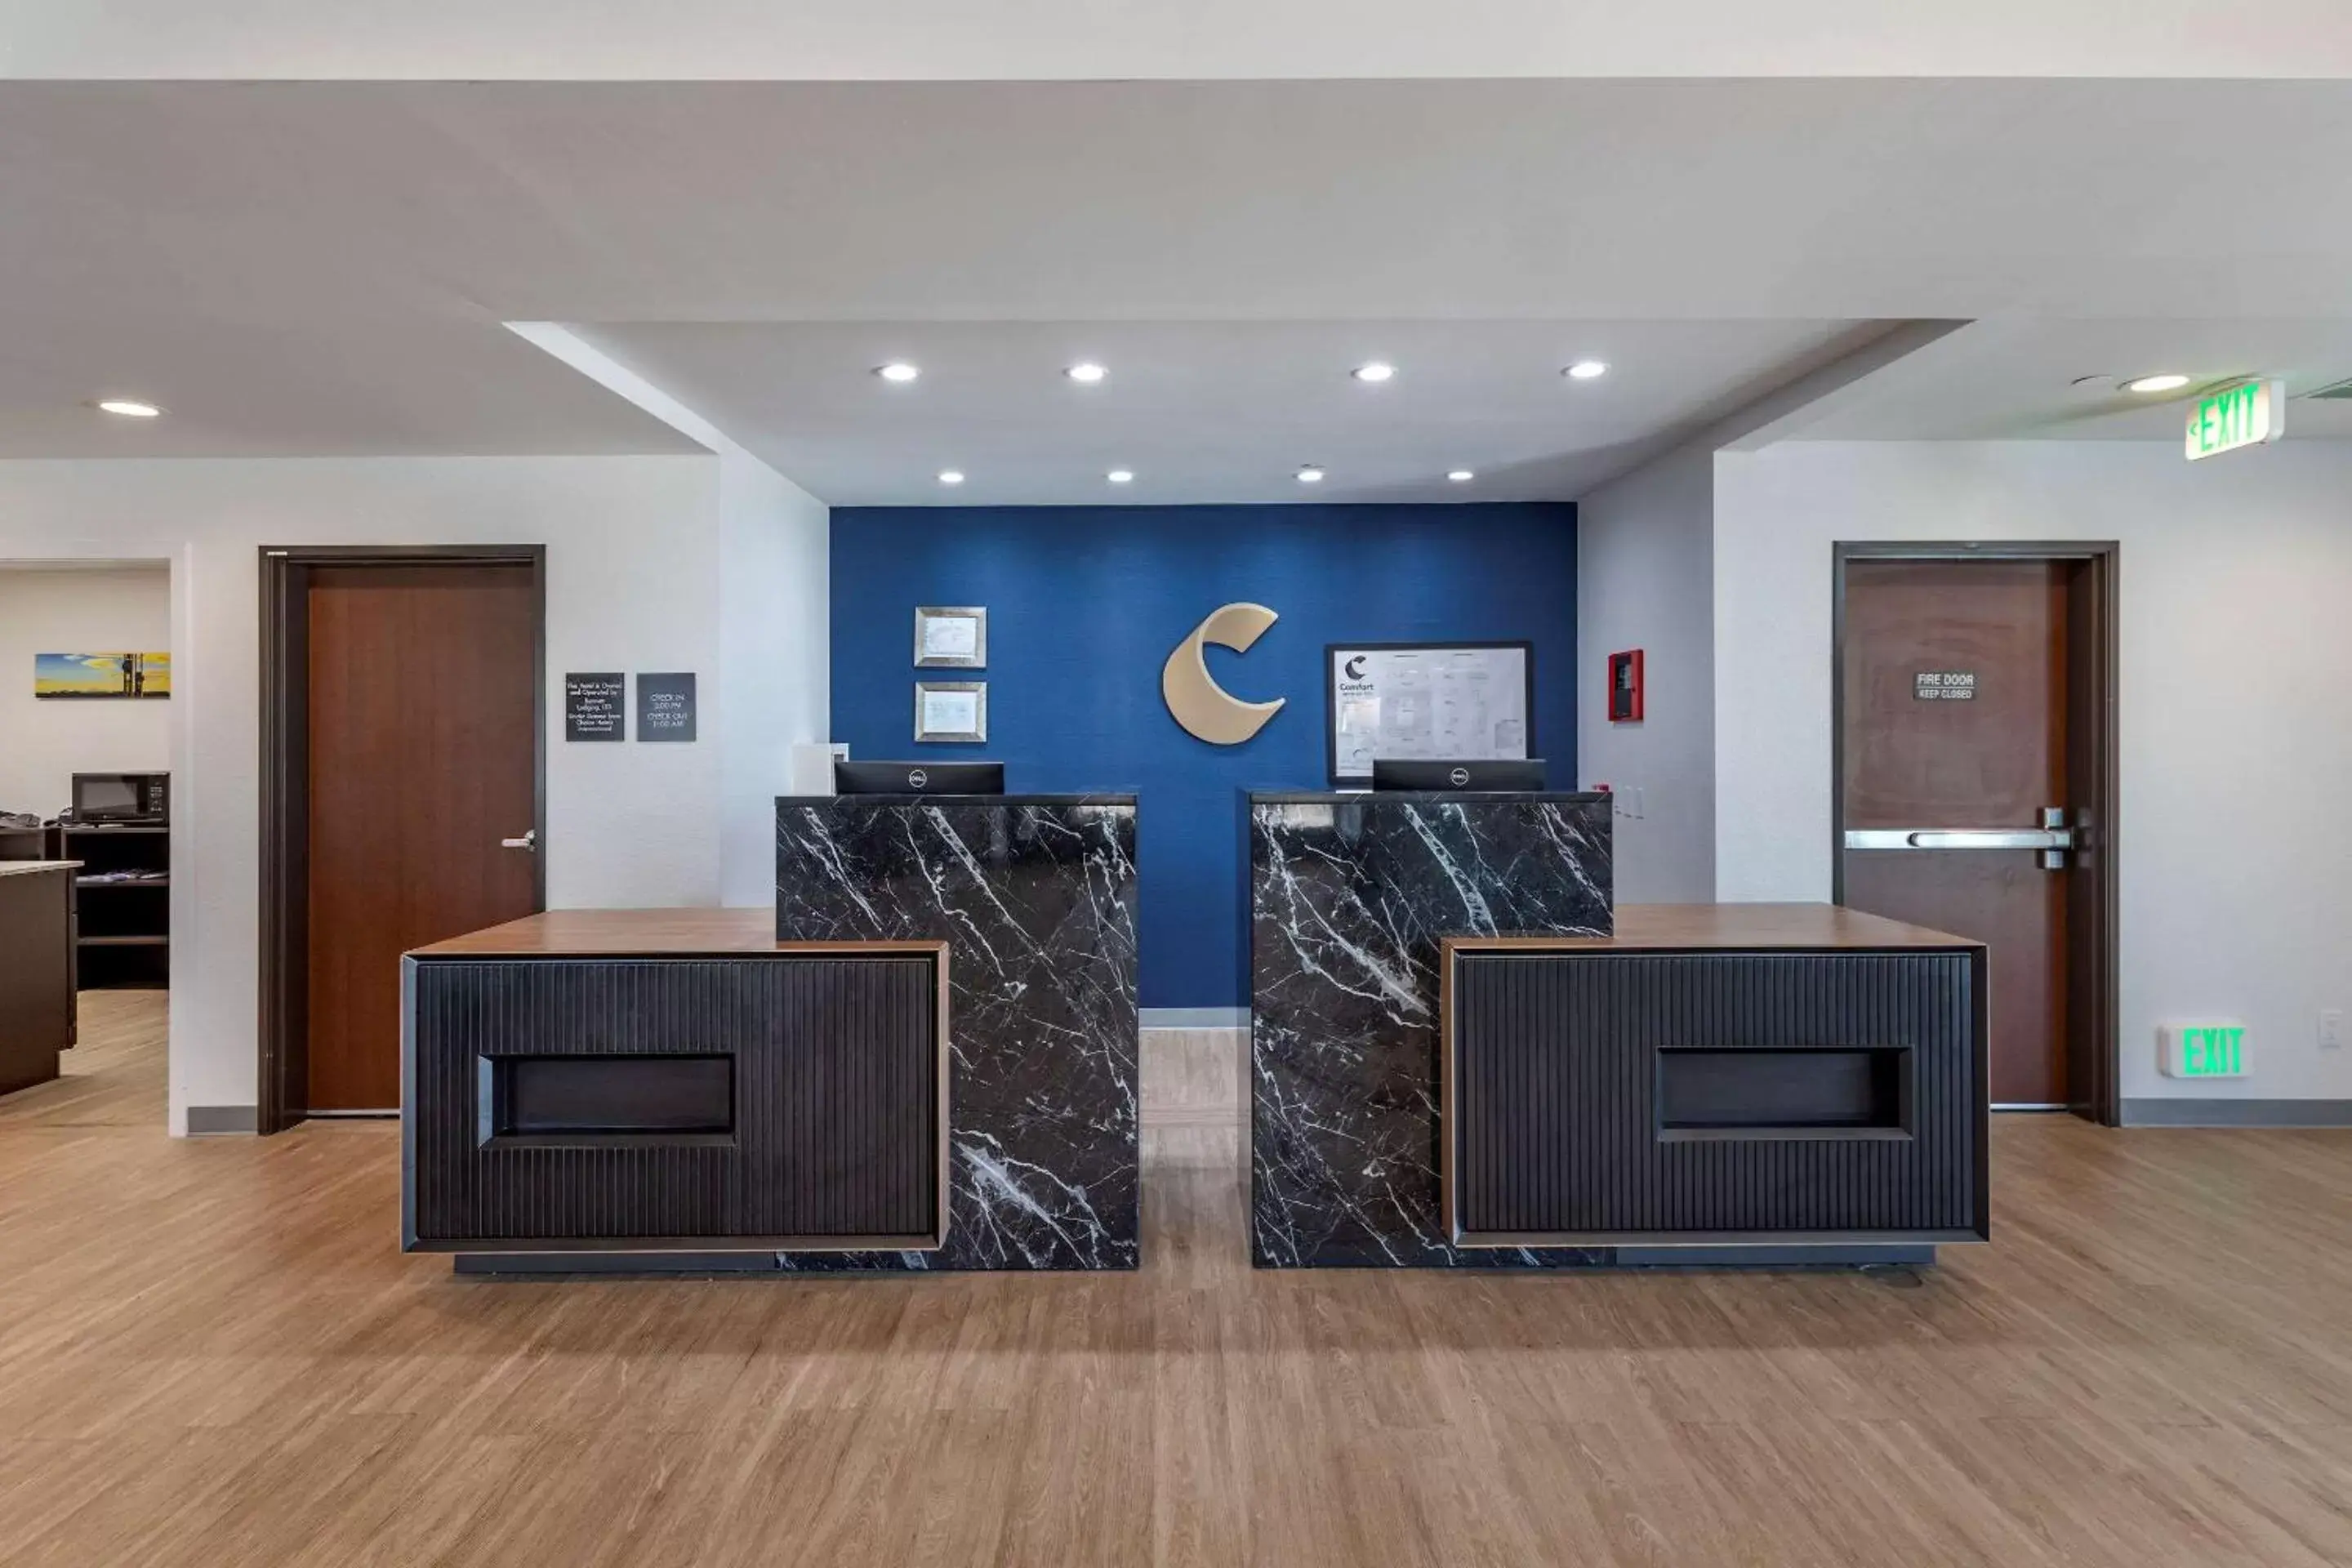 Lobby or reception in Comfort Inn & Suites Bennett